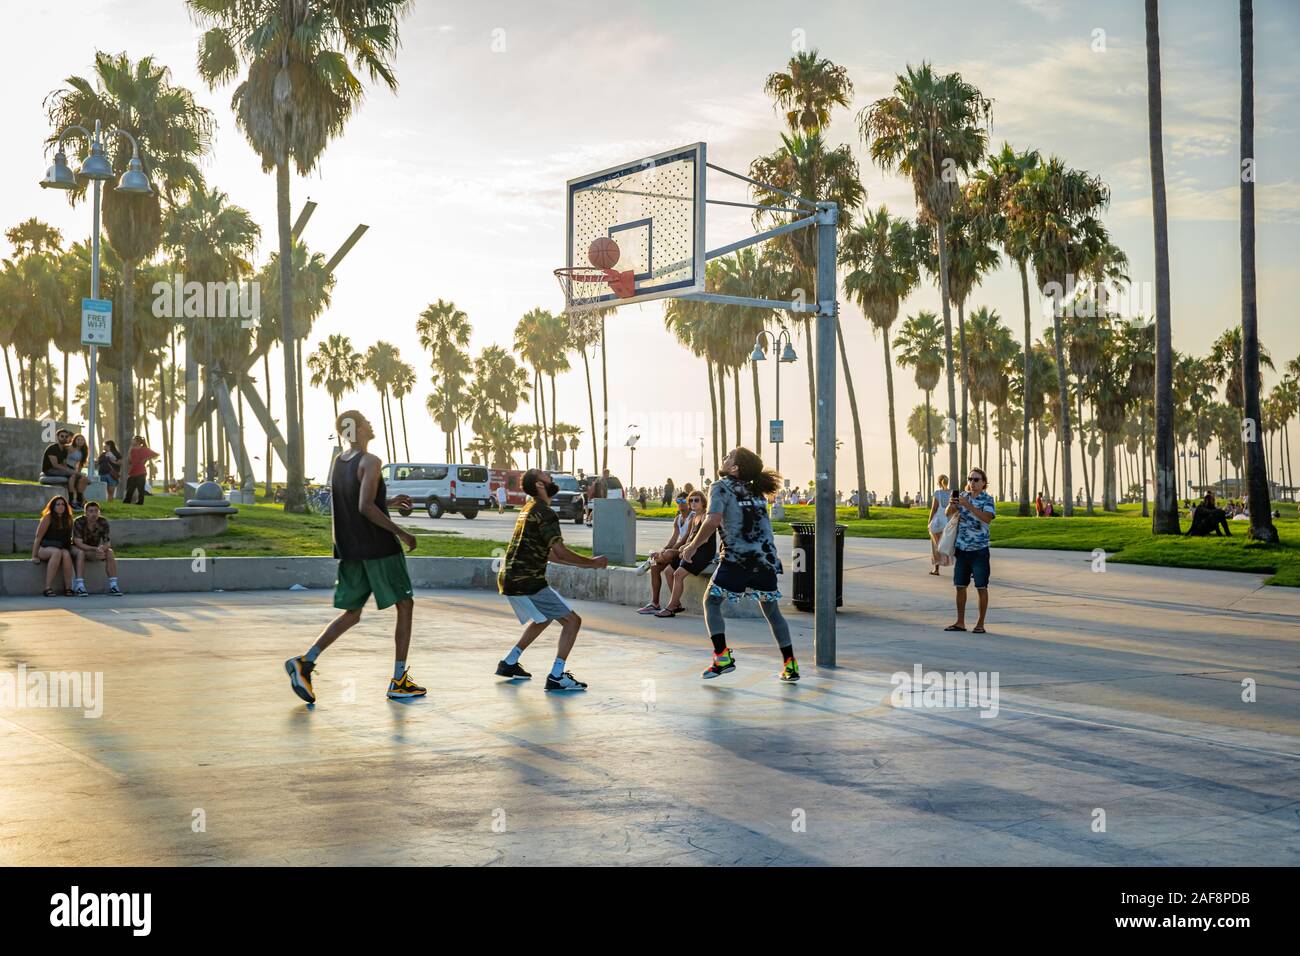 LOS ANGELES - Septiembre 3, 2019: una carrera de baloncesto en la costa del océano en parte de Muscle Beach Foto de stock